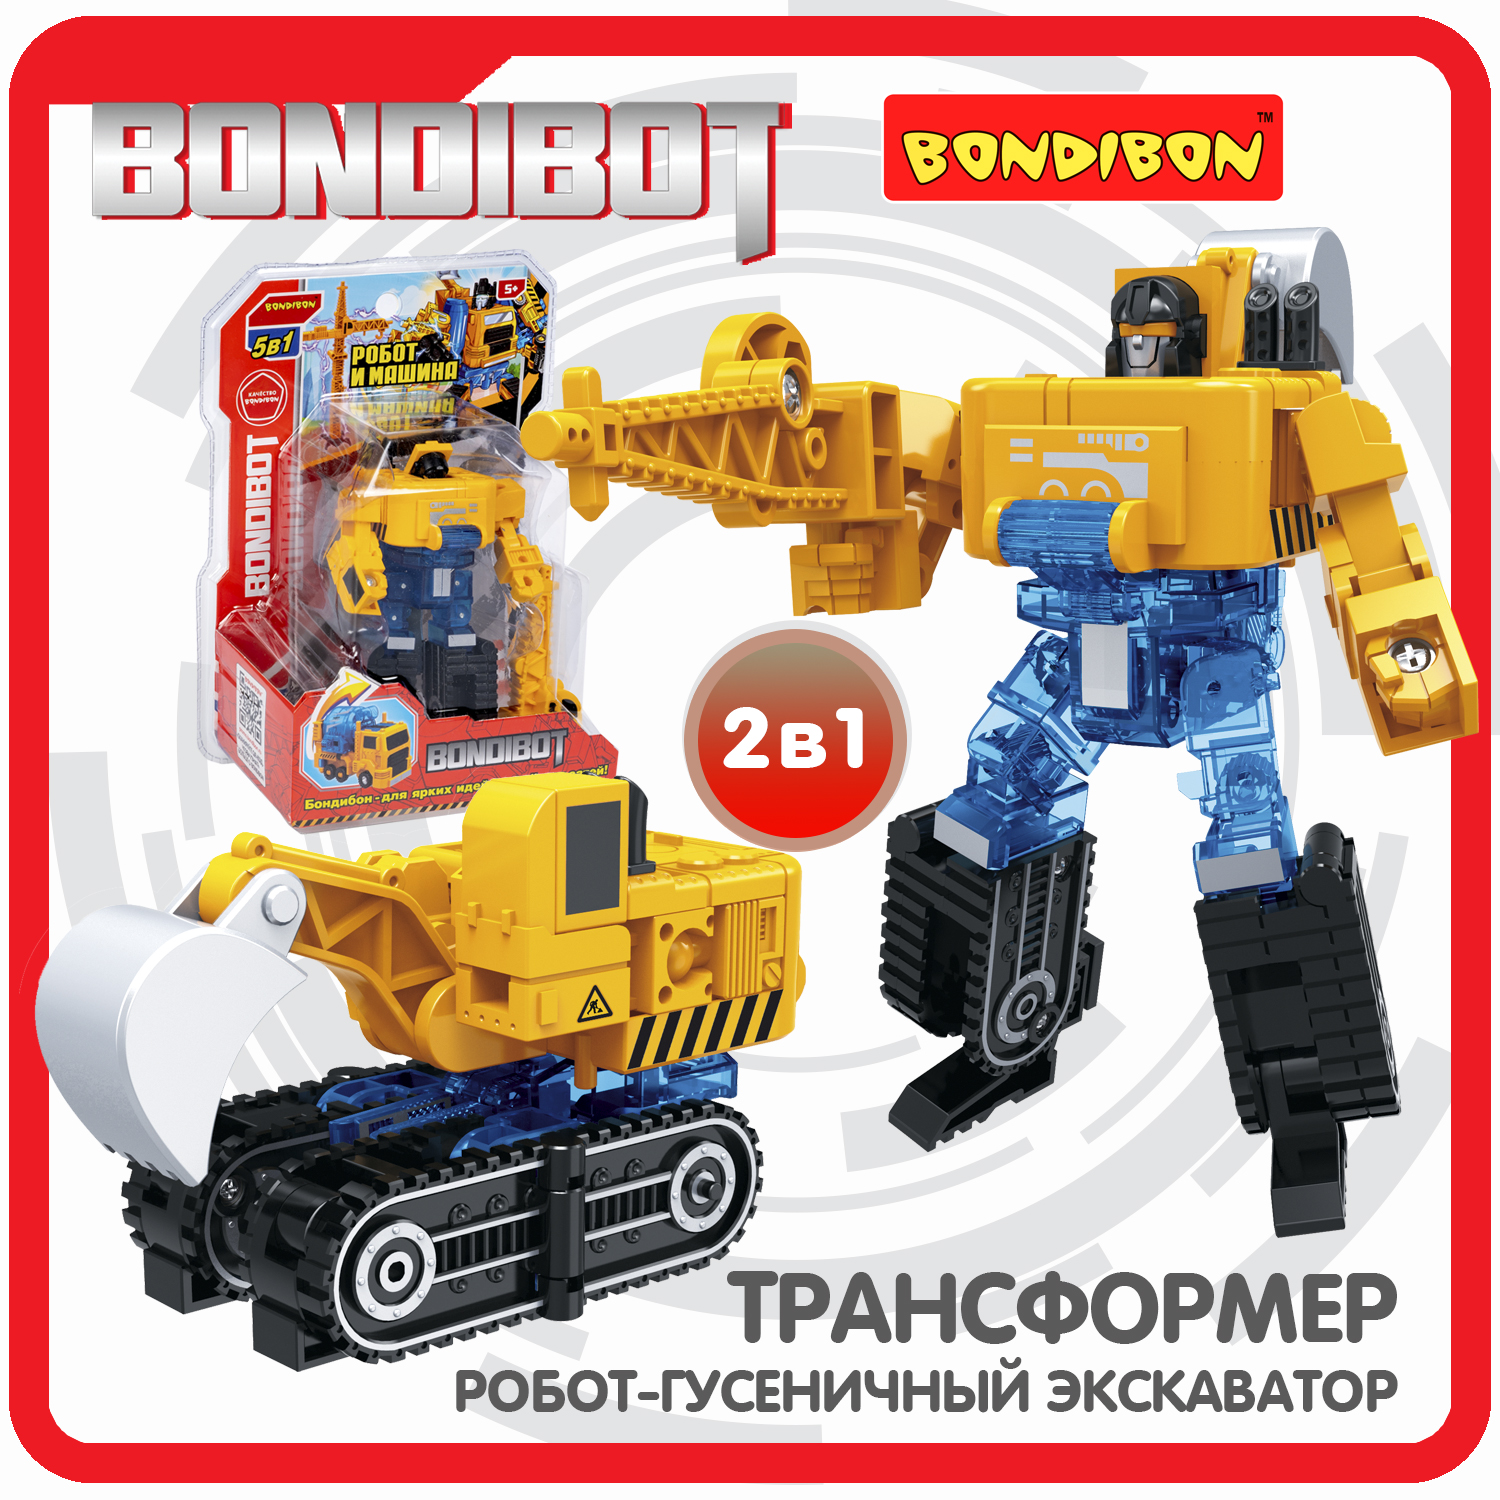 Трансформер 2в1 BONDIBOT Bondibon робот-строит.техника гусенич. экскаватор CRD 20x15x8см крутые машинки и роботы суперраскраска